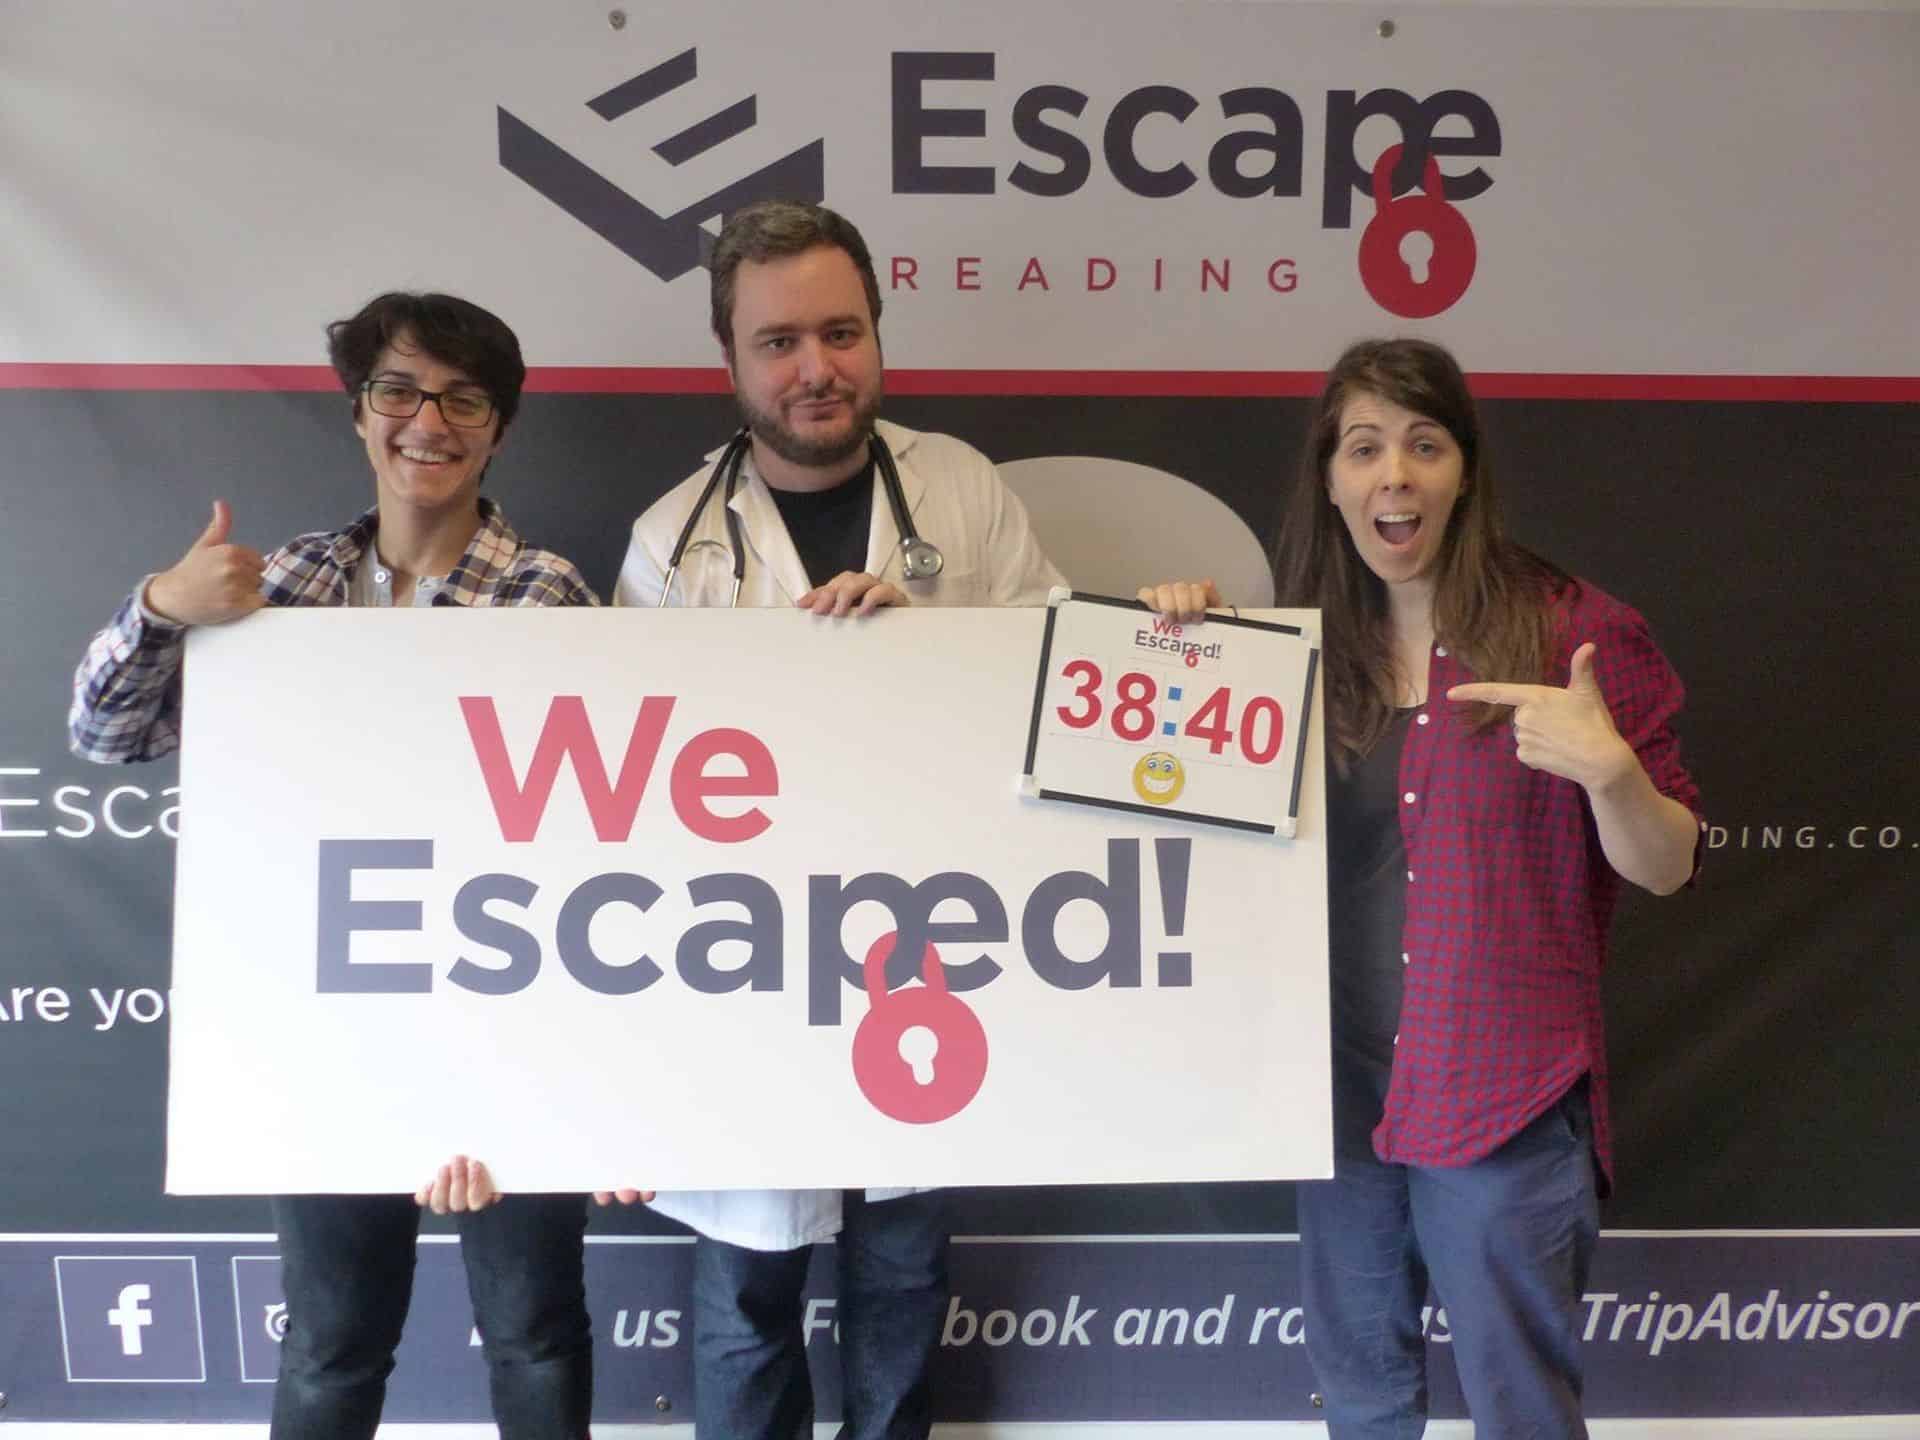 Escape Room - Escape Reading in UK